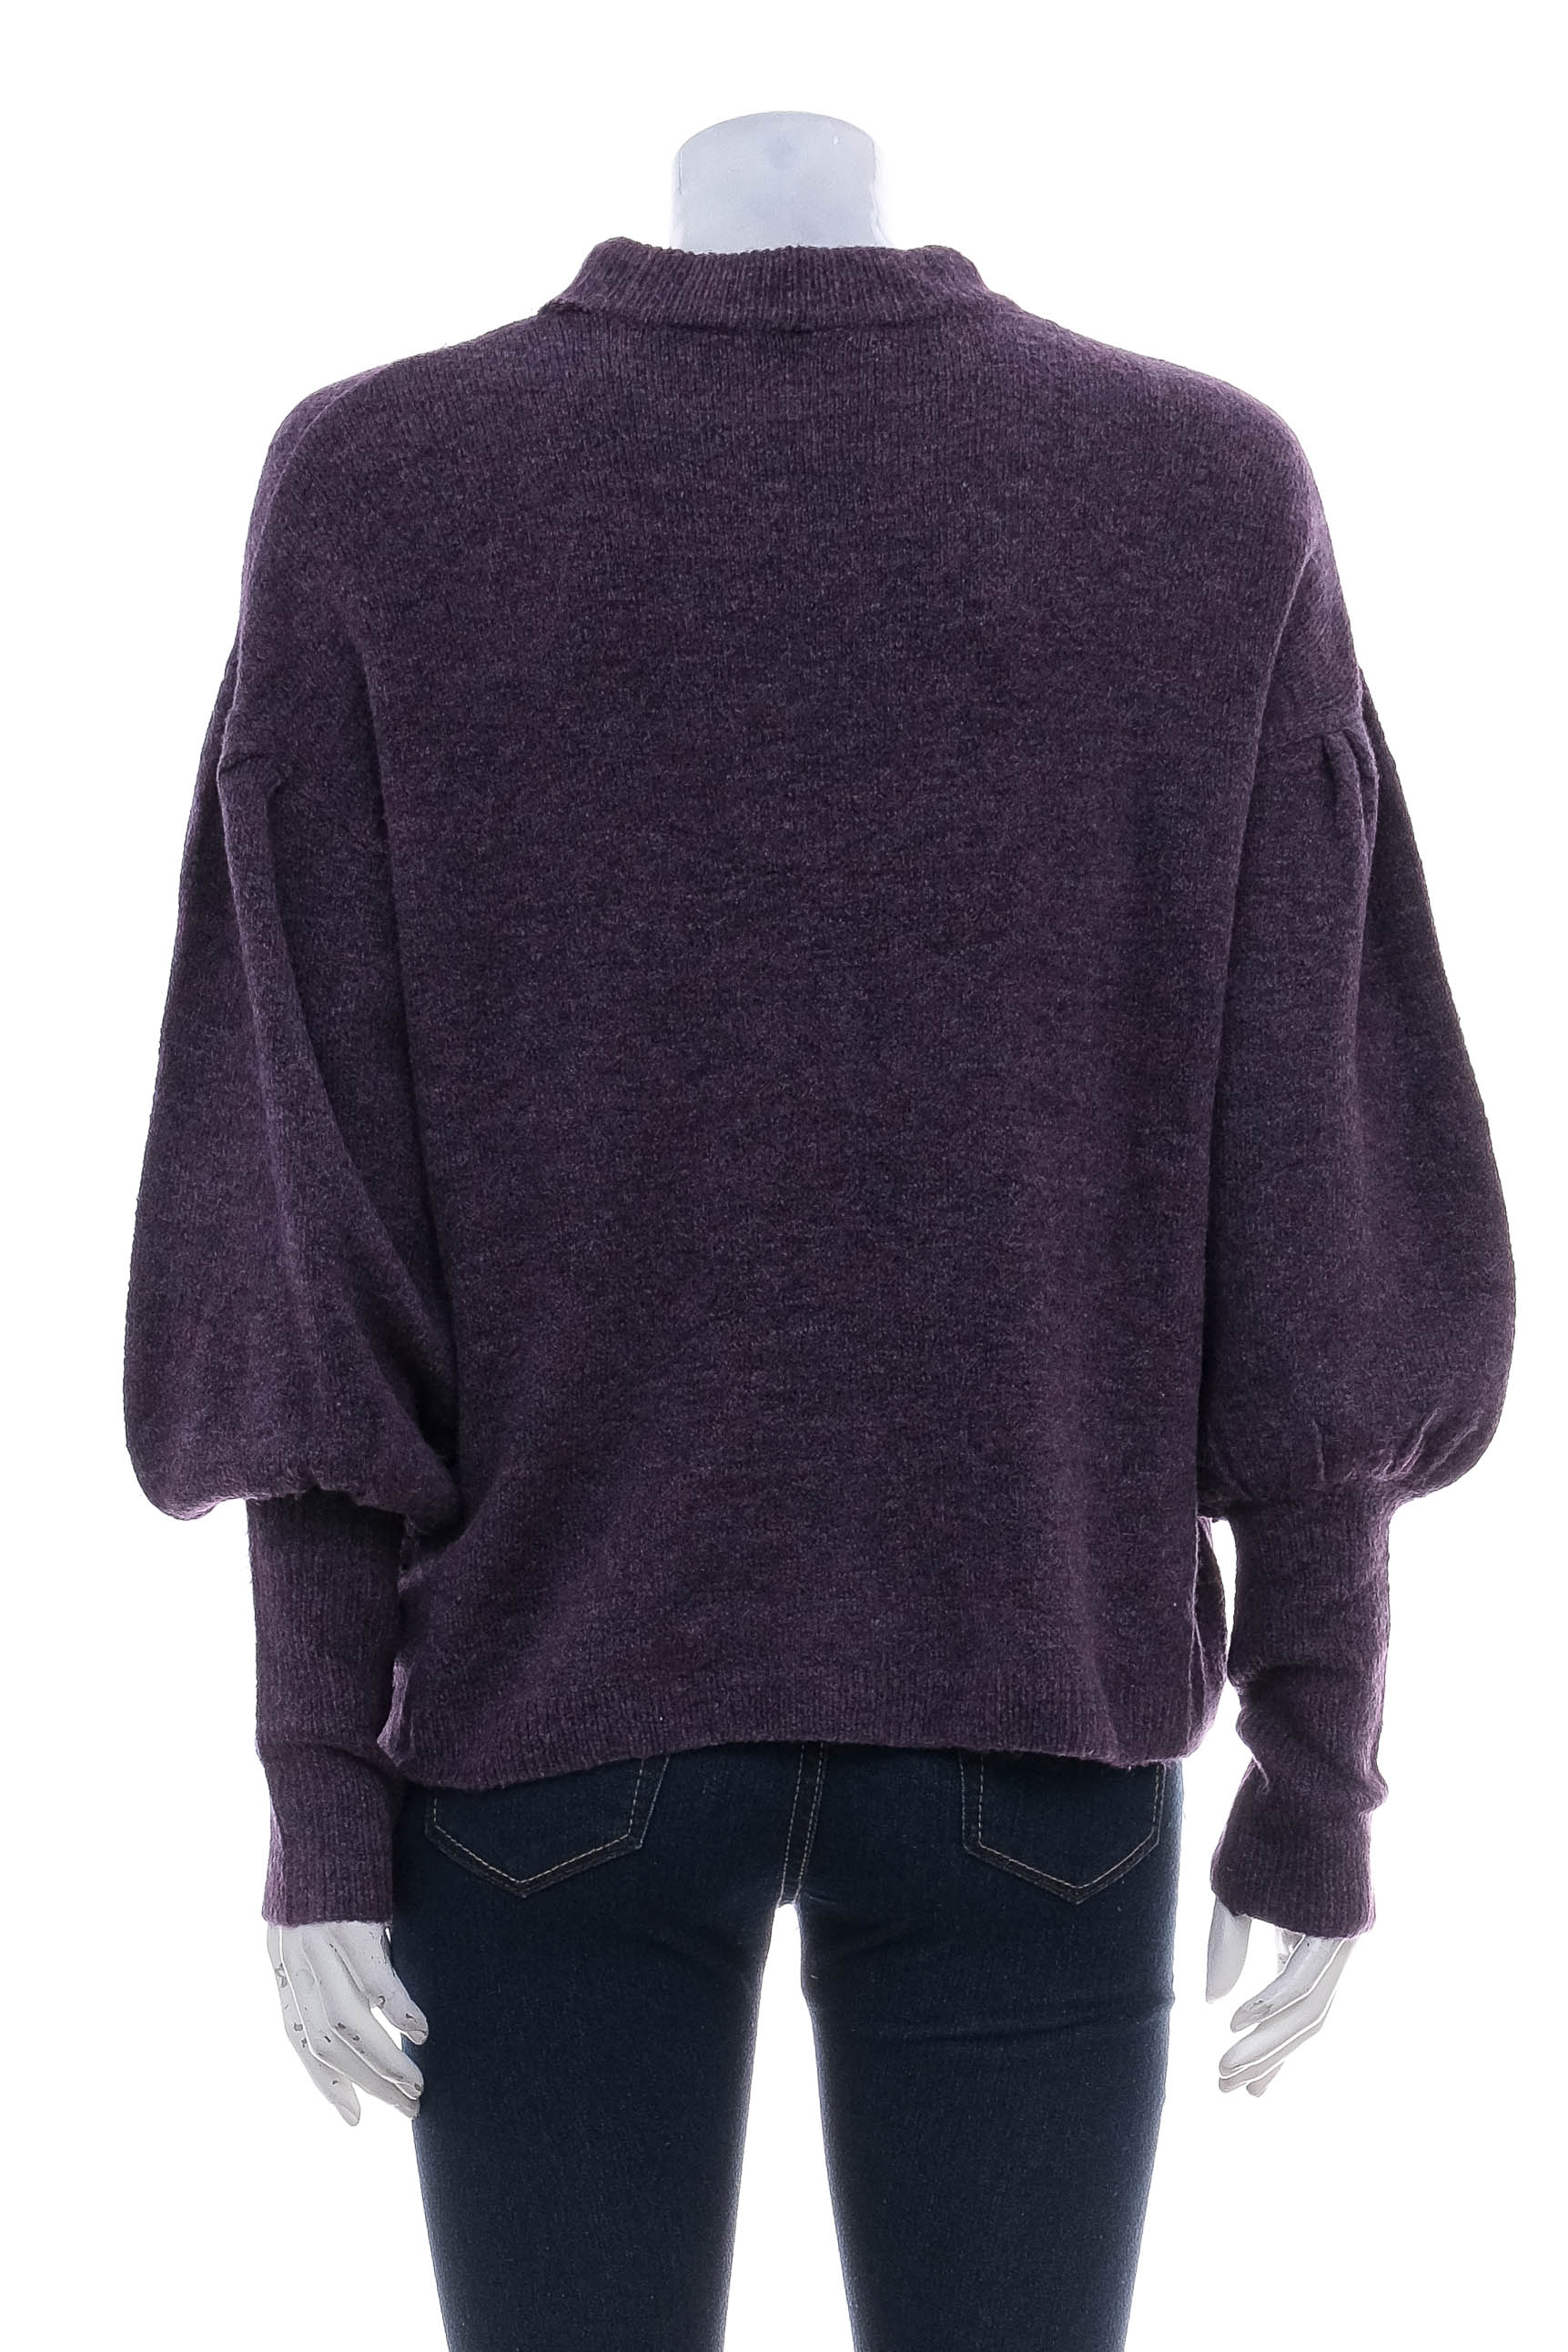 Women's sweater - Hema - 1